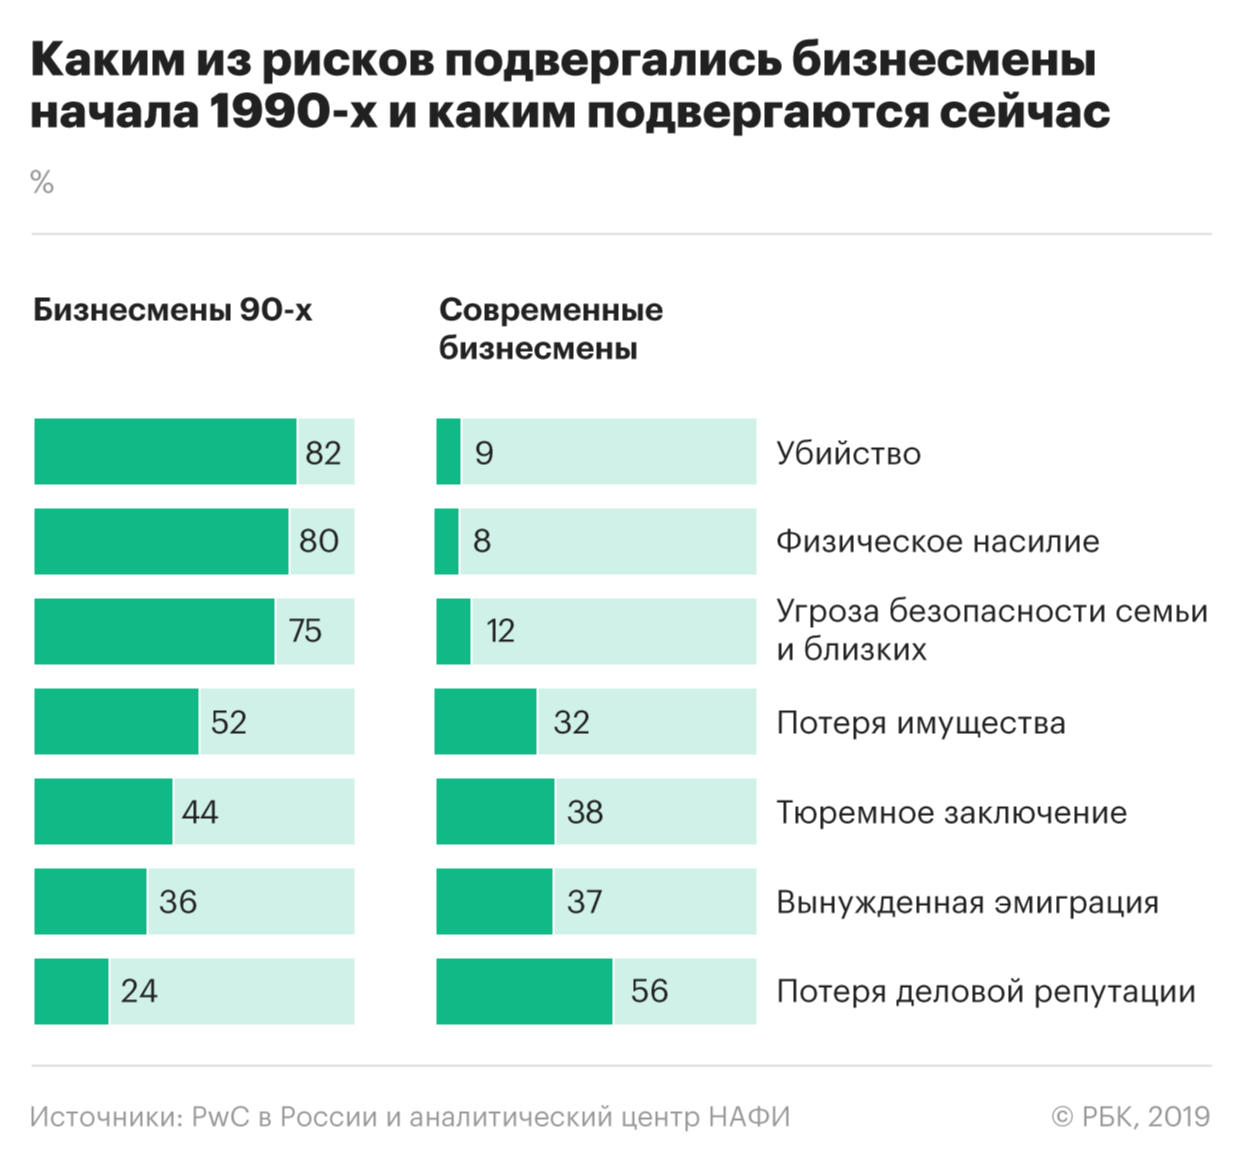 Российский бизнес заявил об ухудшении условий по сравнению с 1990-ми